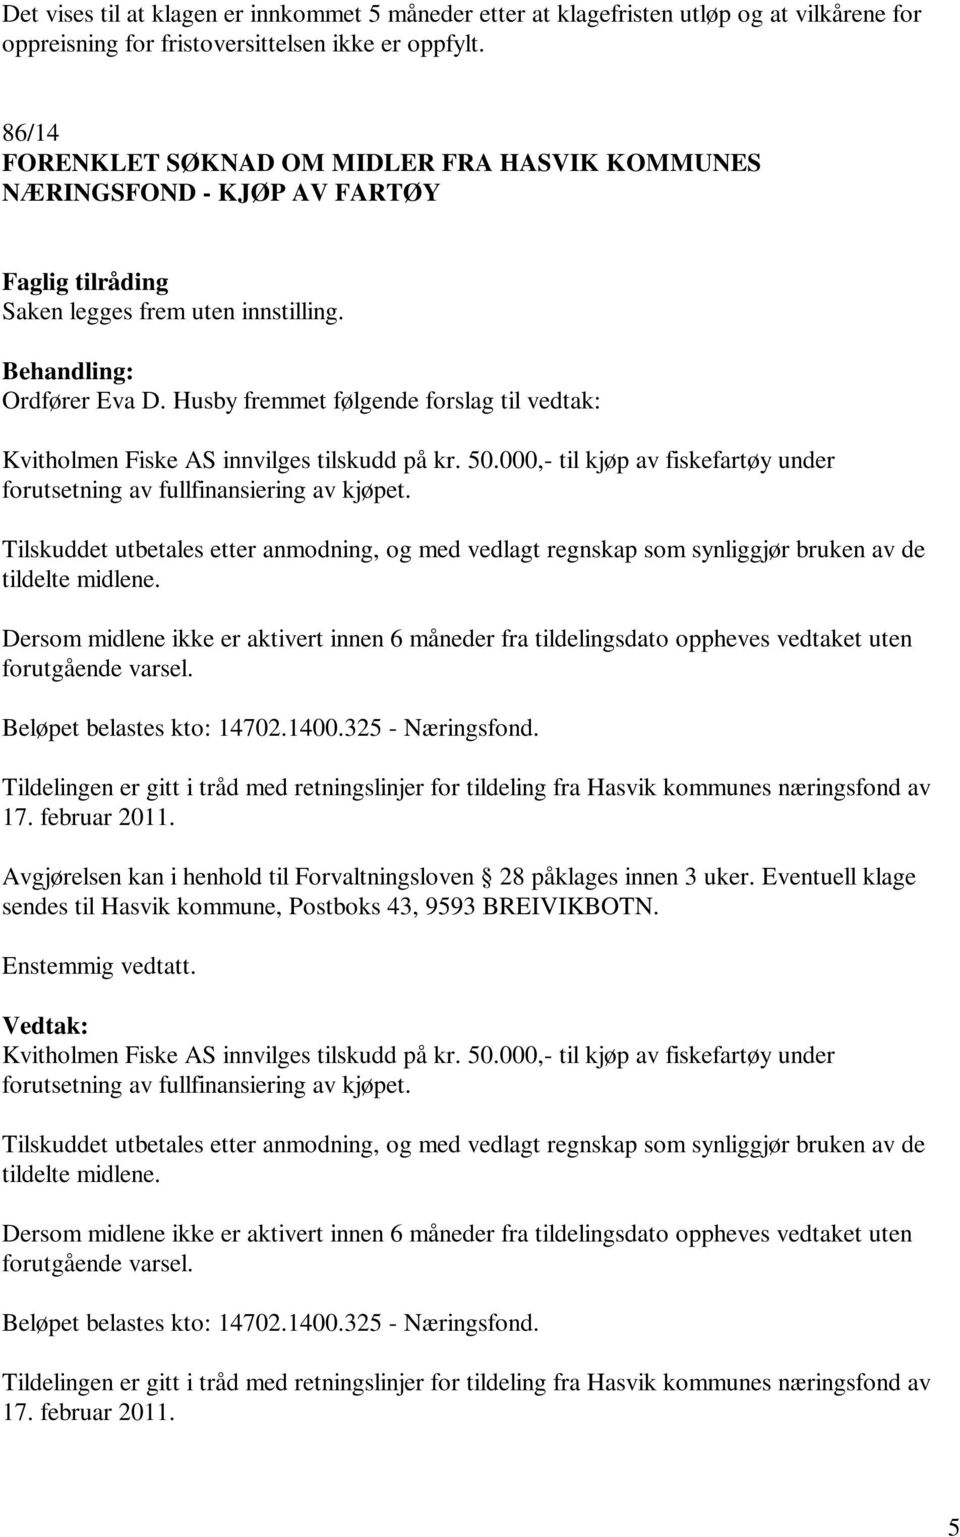 Husby fremmet følgende forslag til vedtak: Kvitholmen Fiske AS innvilges tilskudd på kr. 50.000,- til kjøp av fiskefartøy under forutsetning av fullfinansiering av kjøpet.